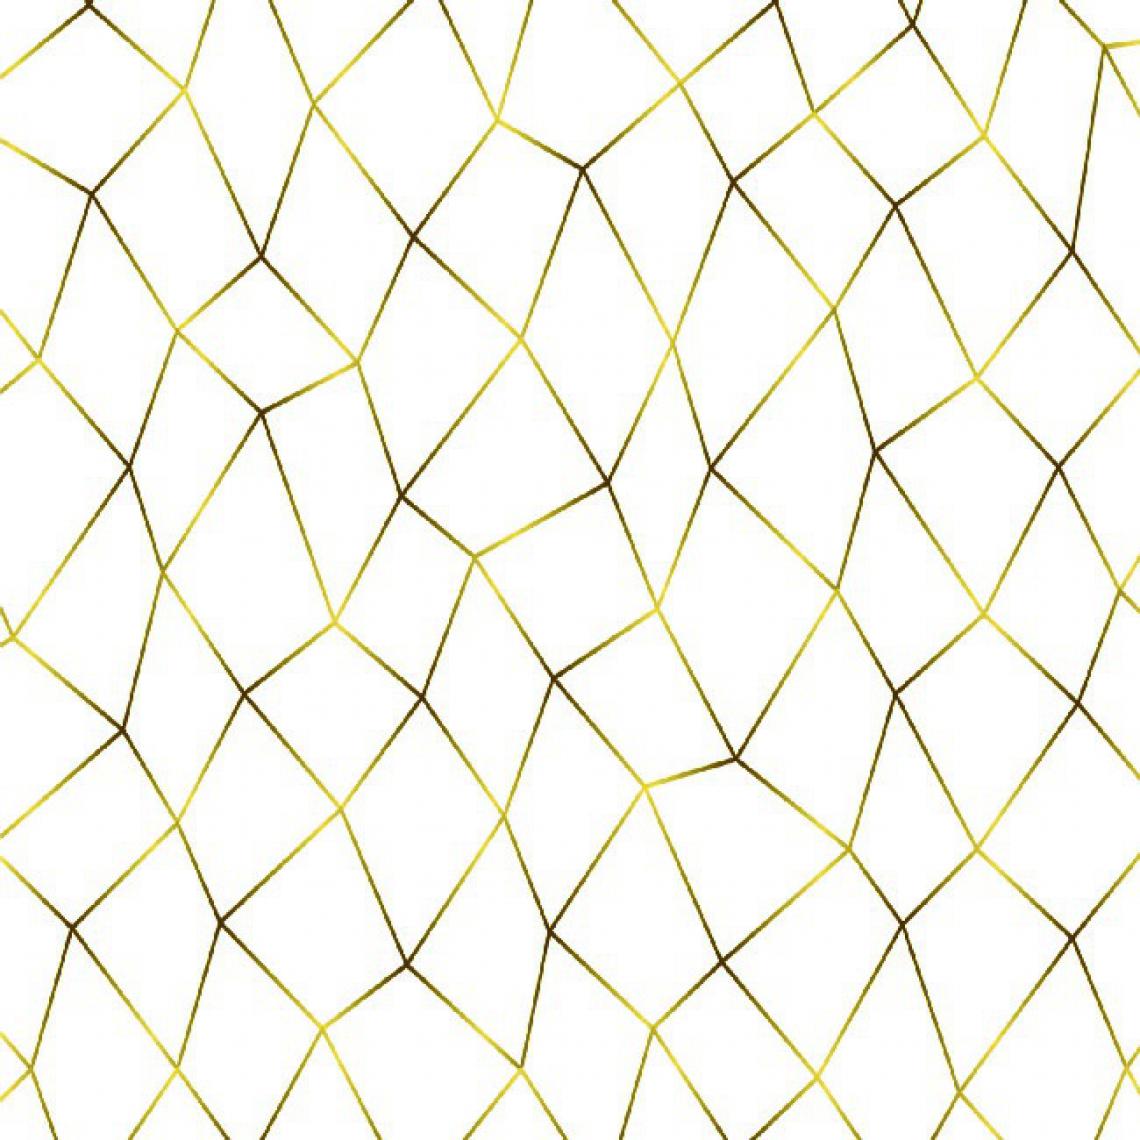 Homemania - HOMEMANIA Tapis Imprimé Modern Choice 4 - Géométrique - Décoration de Maison - Antidérapant - Pour Salon, séjour, chambre à coucher - Multicolore en Polyester, Coton, 80 x 120 cm - Tapis